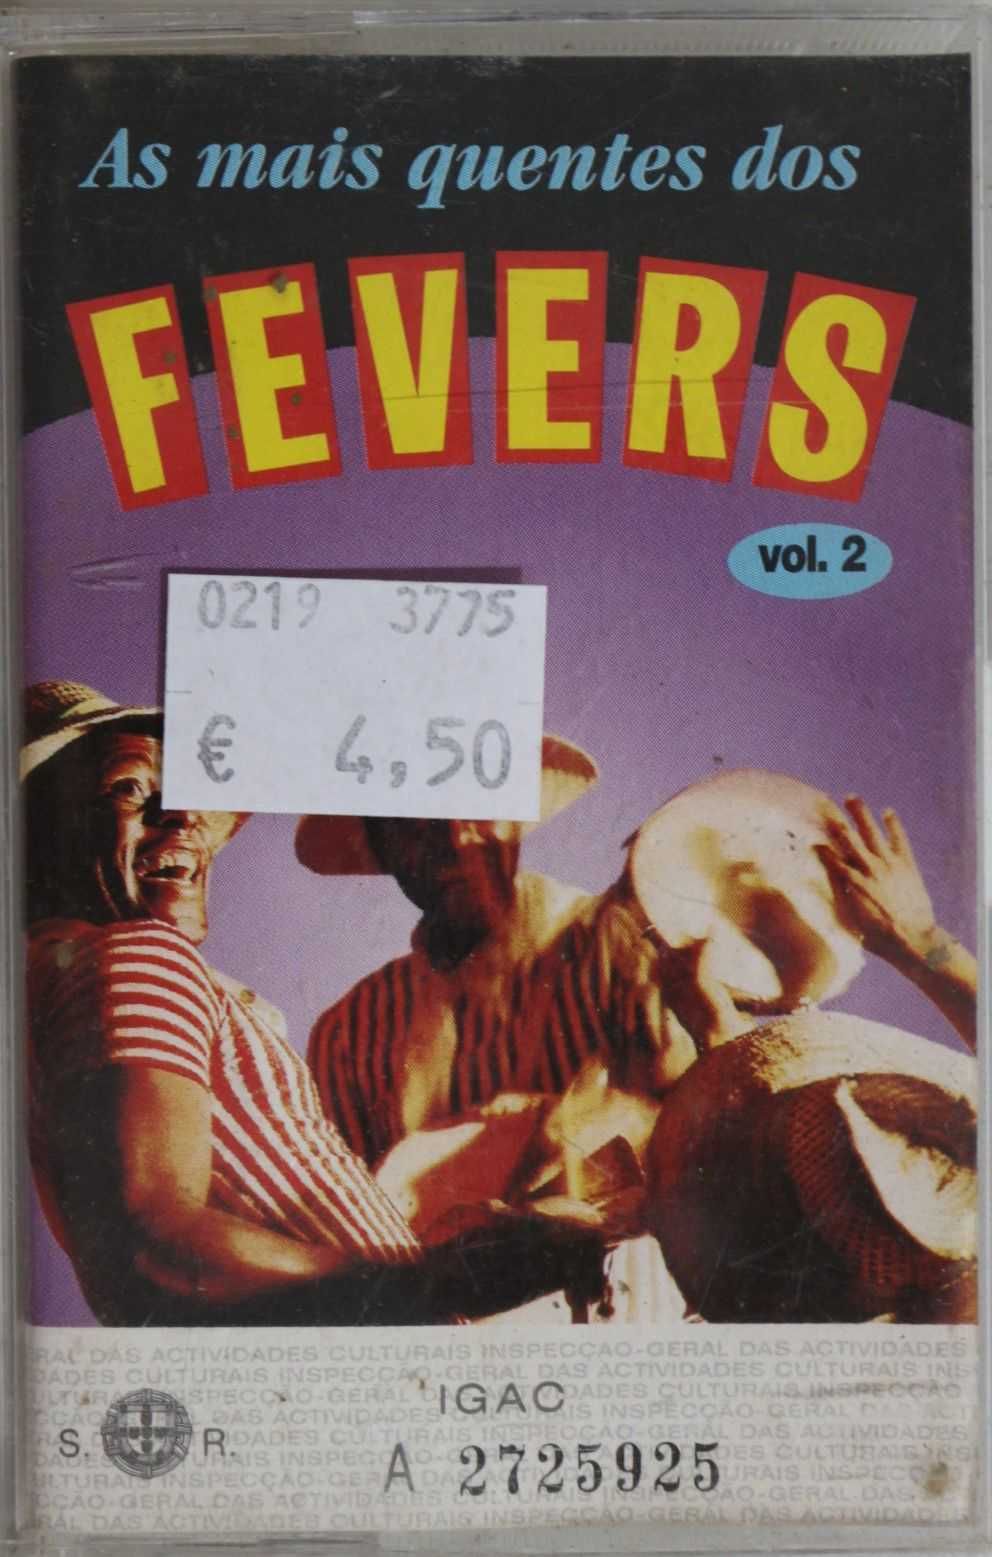 Cassete de Música "As Mais Quentes do Fevers" - Vol. 2